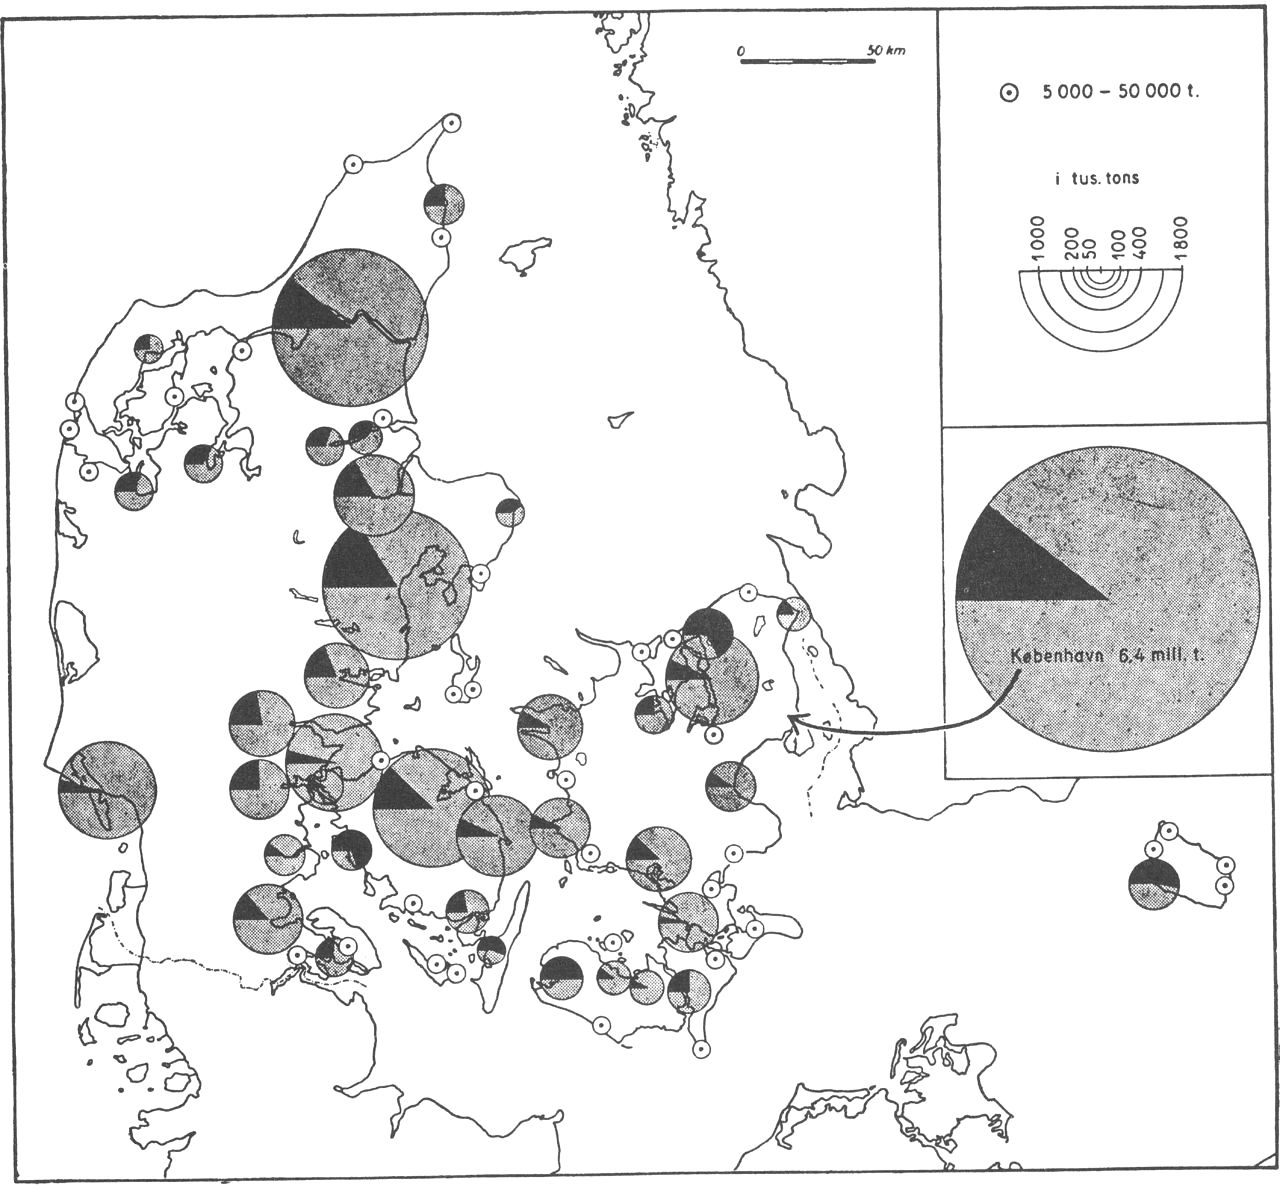 (Kort). Udlossede godsmængder i danske havne 1955 (heri ikke medregnet færgefart). Den sorte sektor angiver de varemængder, der kommer fra andre danske havne. Hvor de udlossede ladninger i alt er mindre end 5000 t, er havnen ikke medtaget.